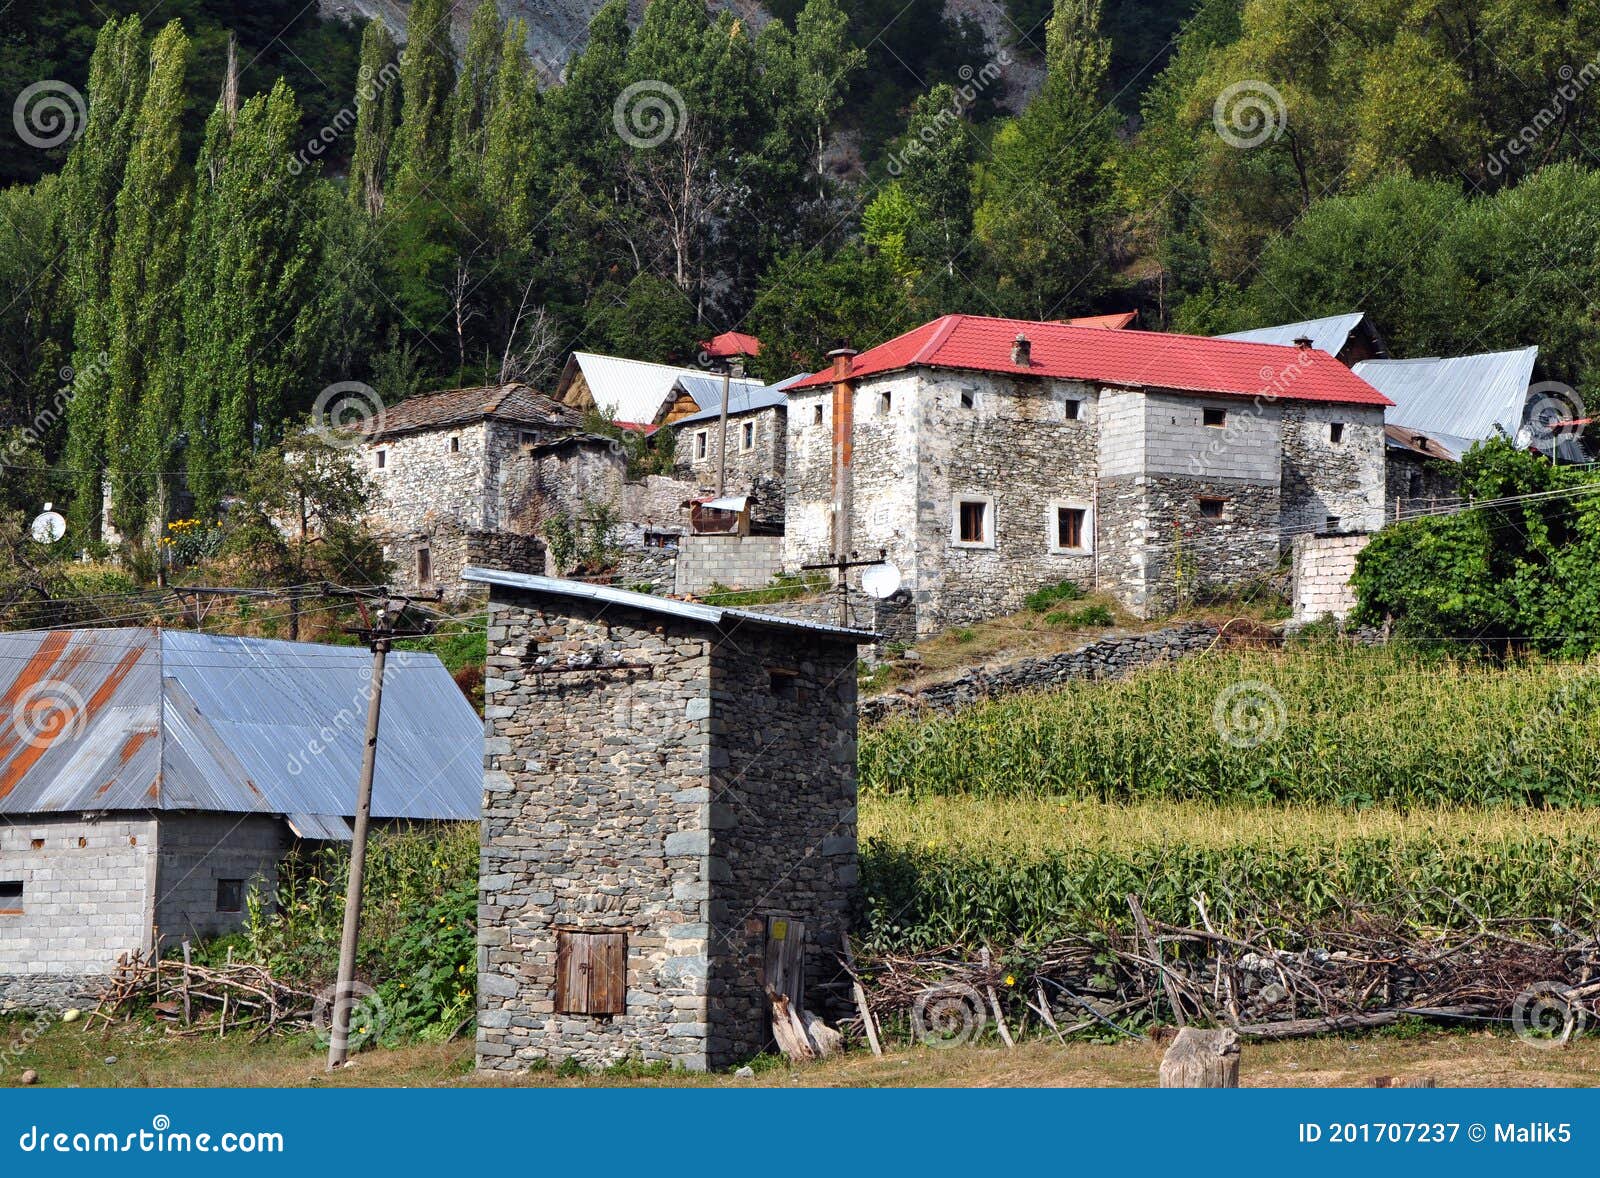 village Ãâ¡ajÃÂ« is located between two rivers that flow into the black drin river, at the foot of mount korab, albania